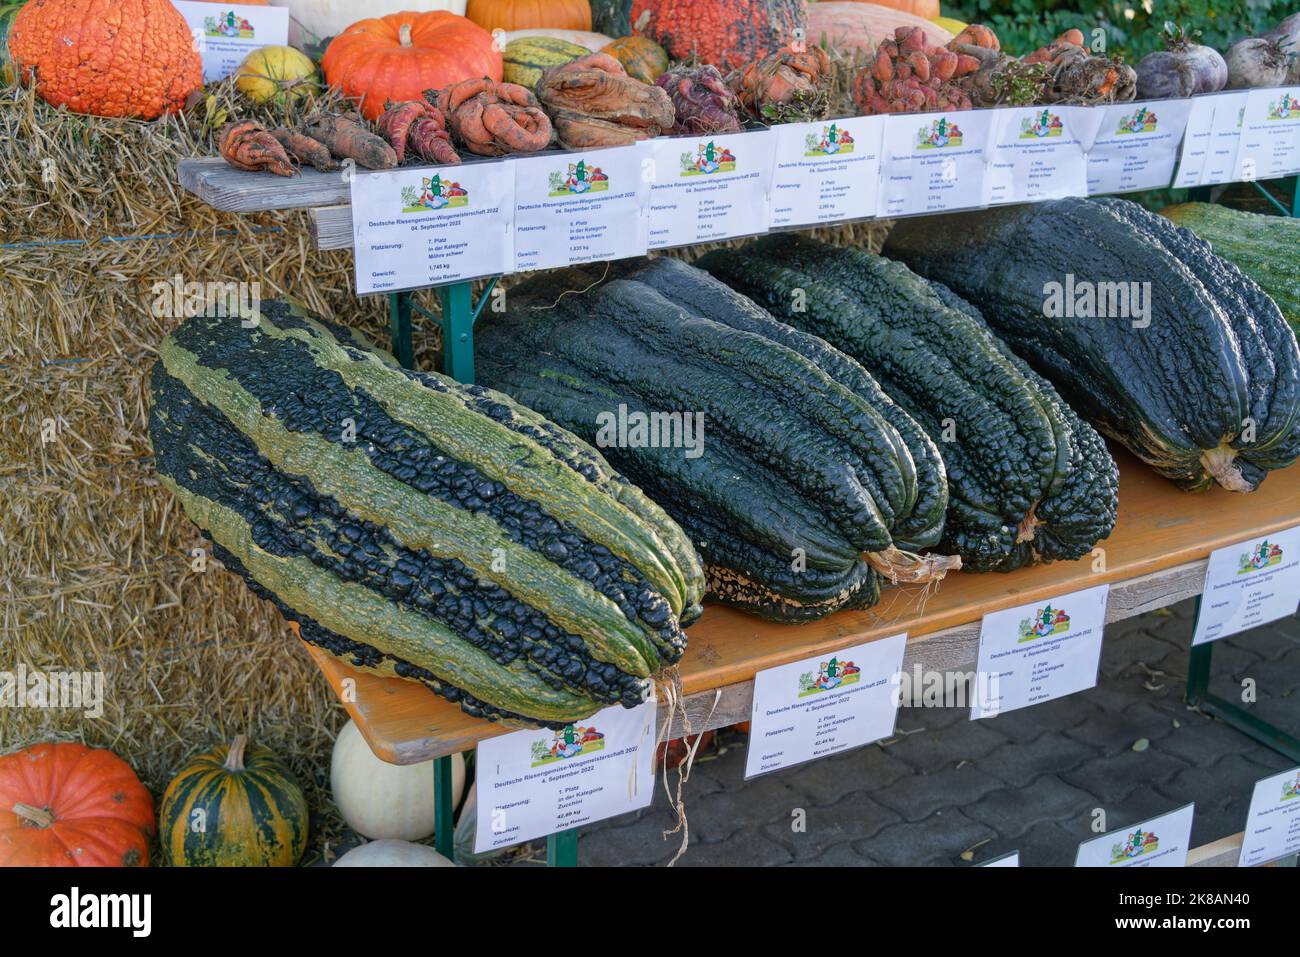 Herbstmarkt auf dem Spargelhof in Klaistow, Kürbismarkt, Bauernhof, Stock Photo